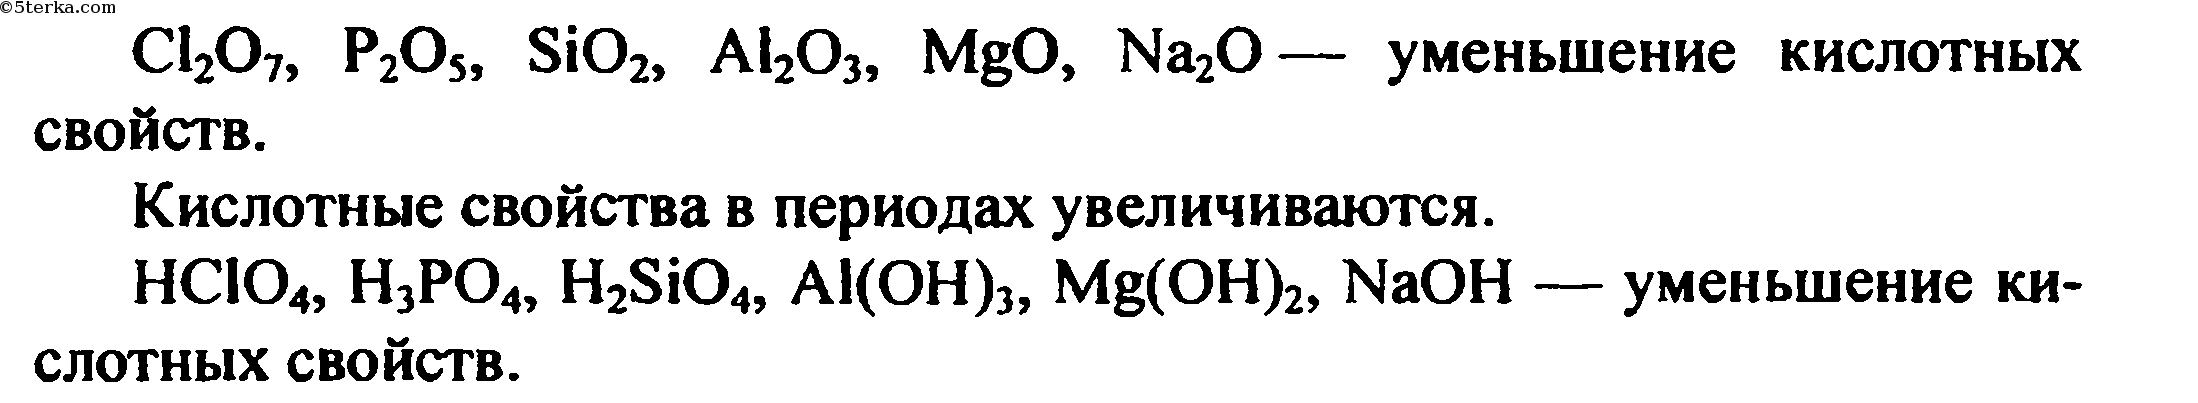 Li2o формула гидроксида. Порядок уменьшения кислотных свойств их оксидов. Порядок уменьшения кислотеый свойств. Расположите в порядке ослабления кислотных свойств. Расположить в порядке ослабевания кислотных свойств.